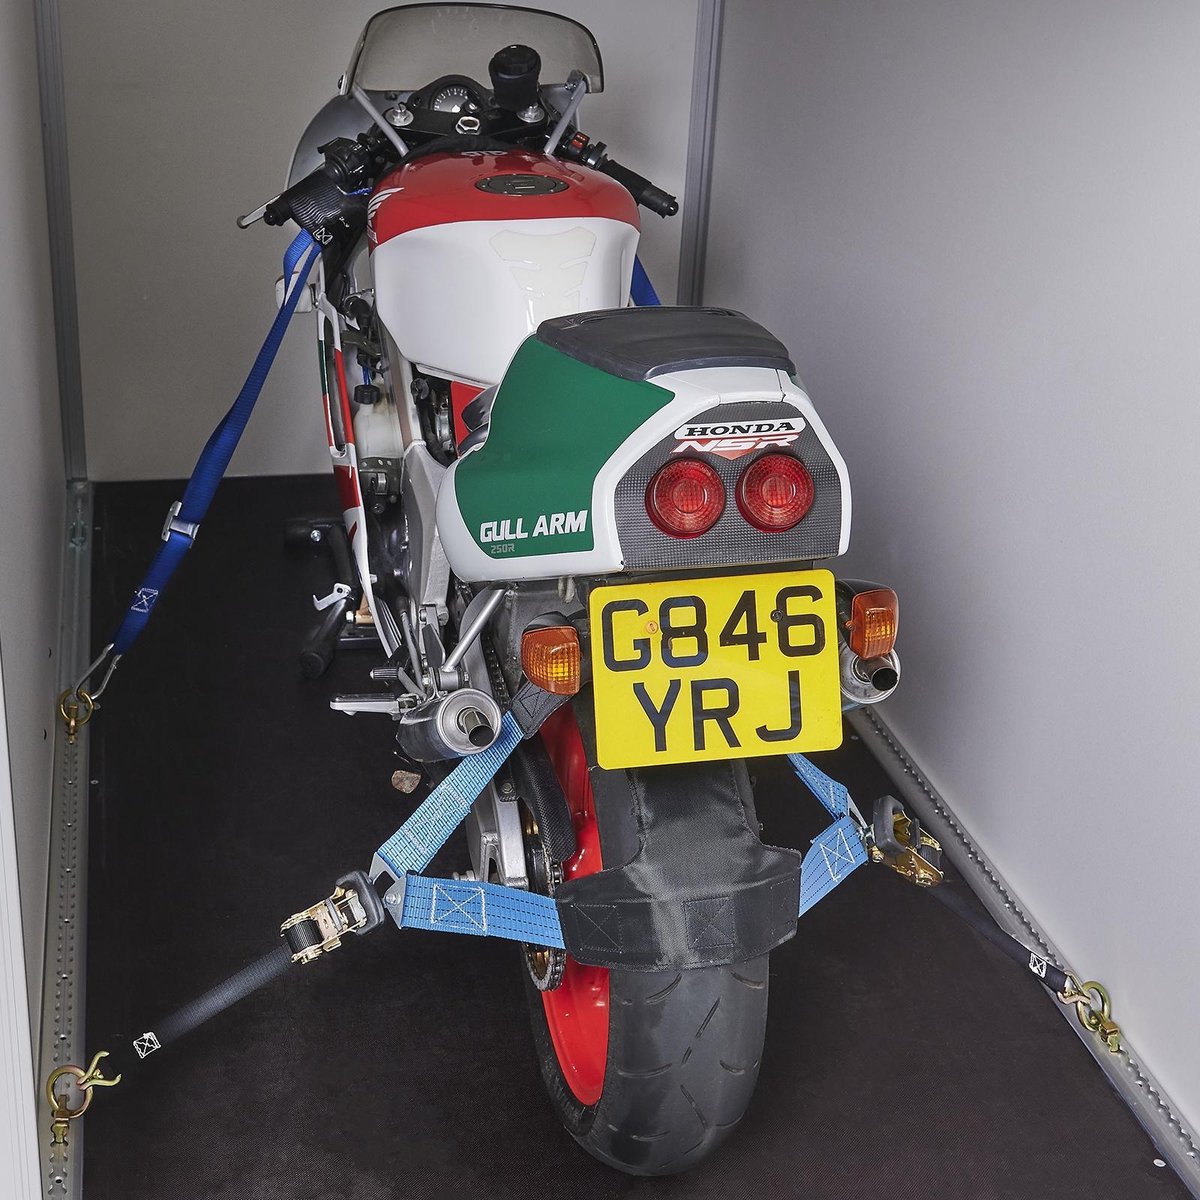 Acebikes Buckle-Up - Sangle pour guidon de moto - sac de transport